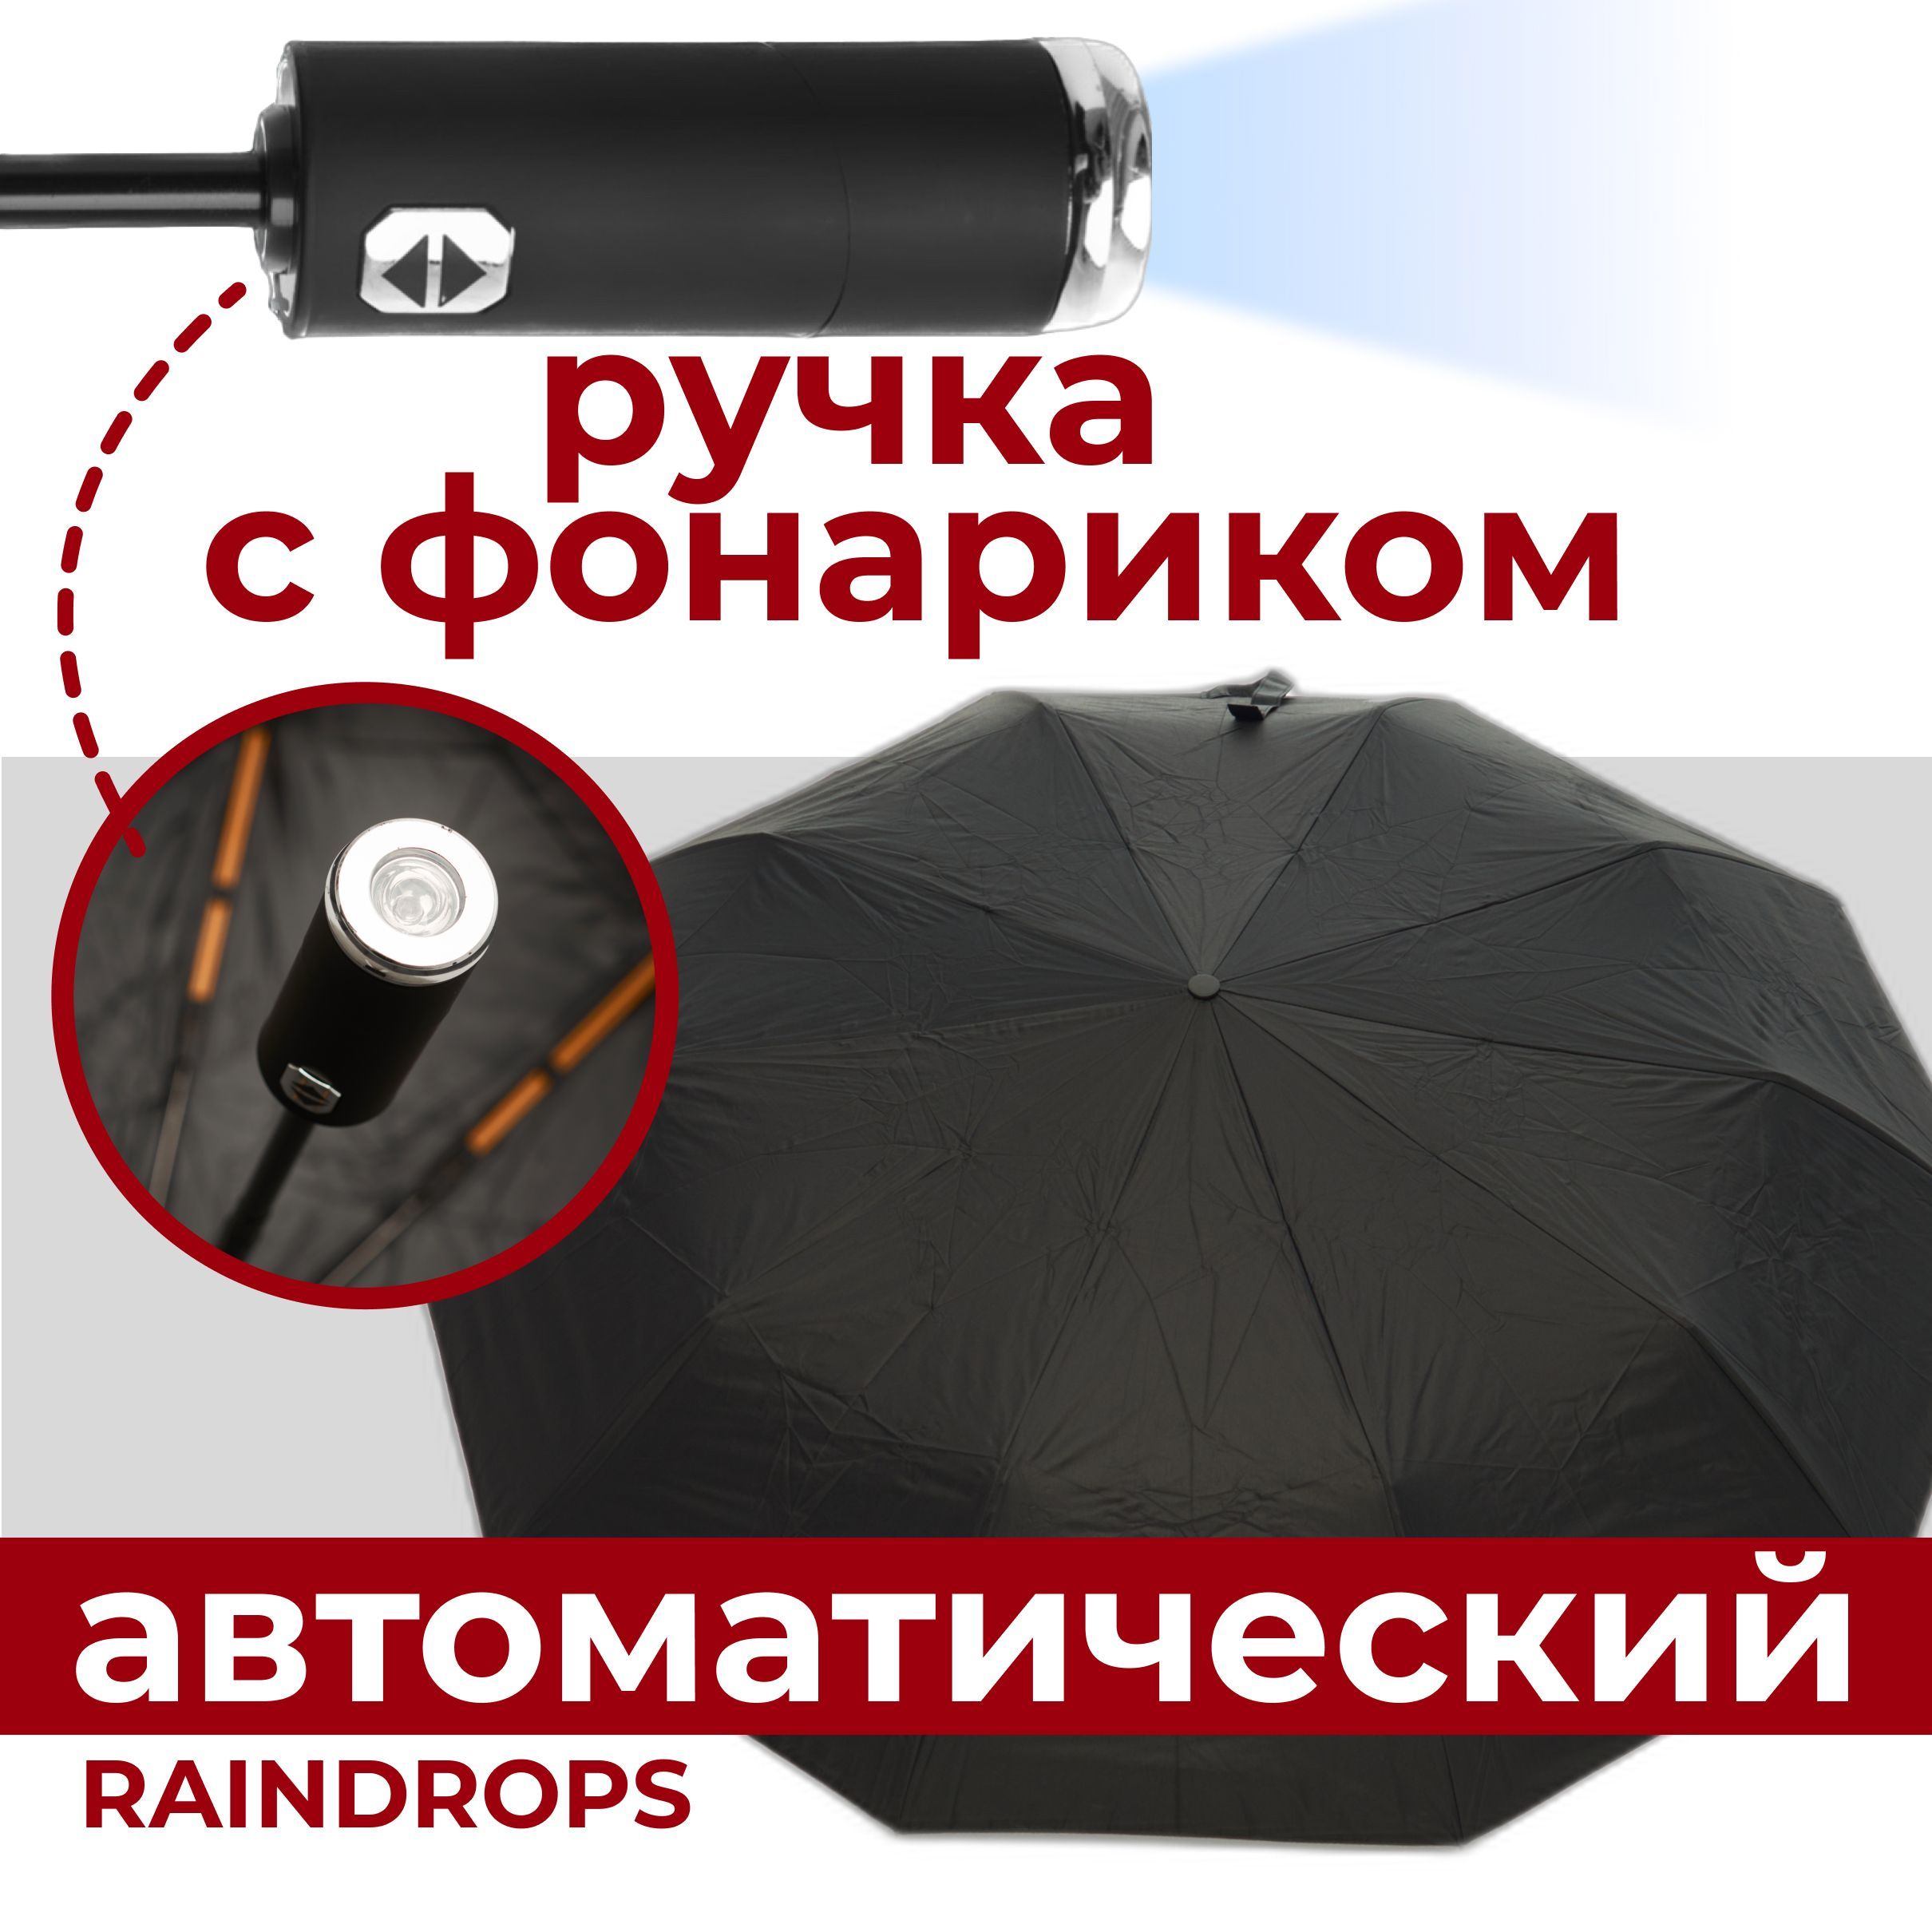 RaindropsЗонтПолныйавтомат